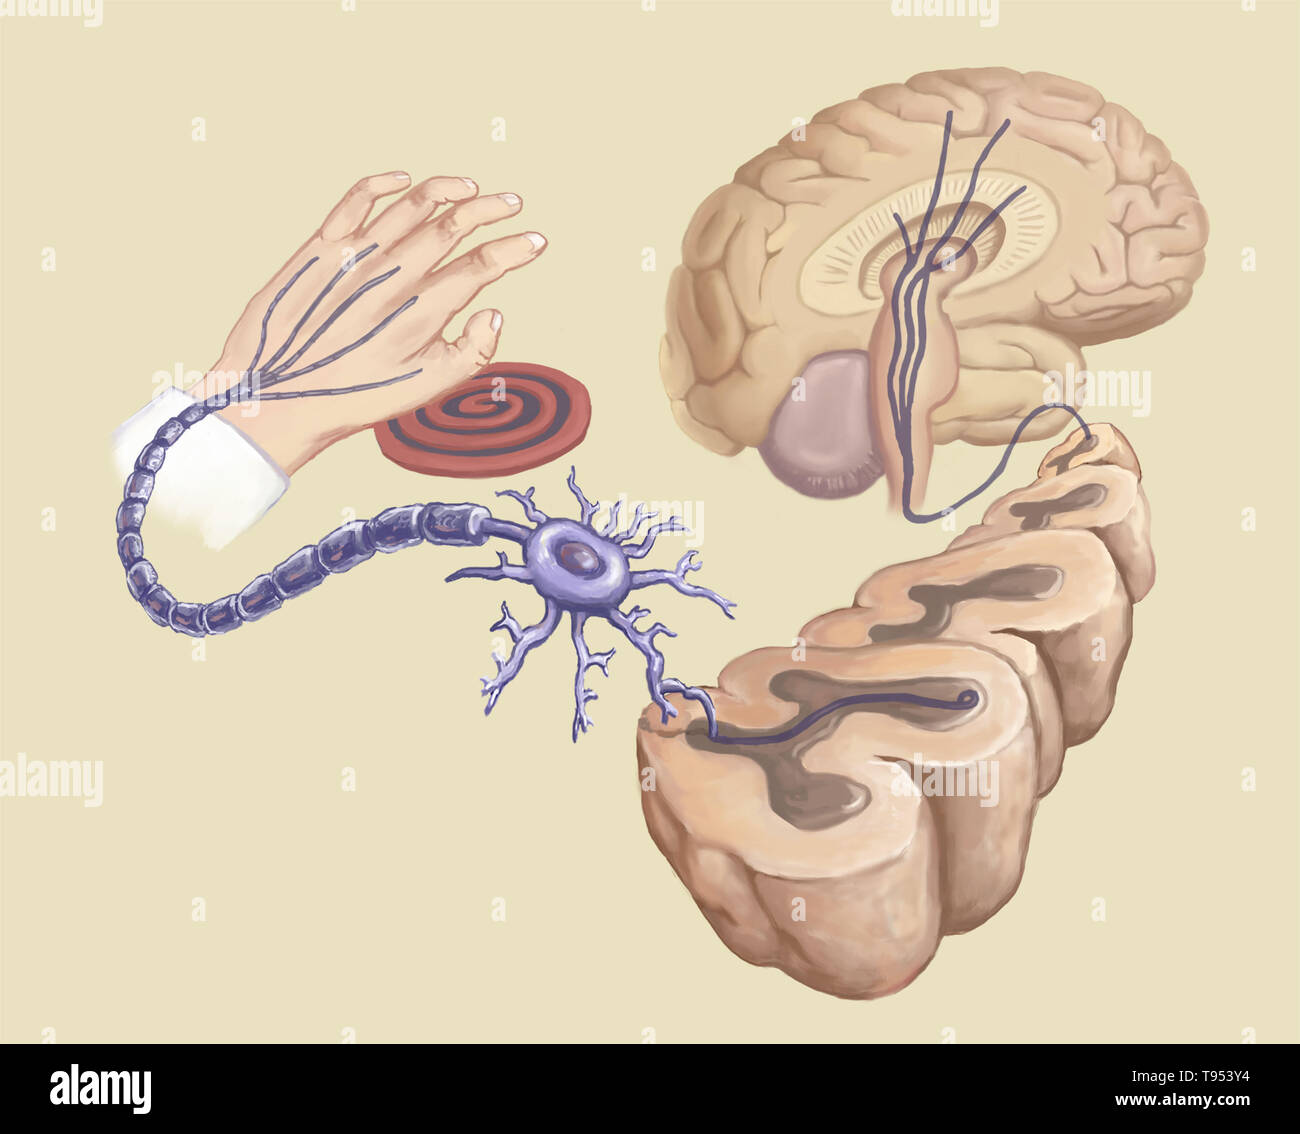 Illustrazione di una mano toccando una stufa calda e elemento di reazione nel corpo di circuiti neurali. Foto Stock